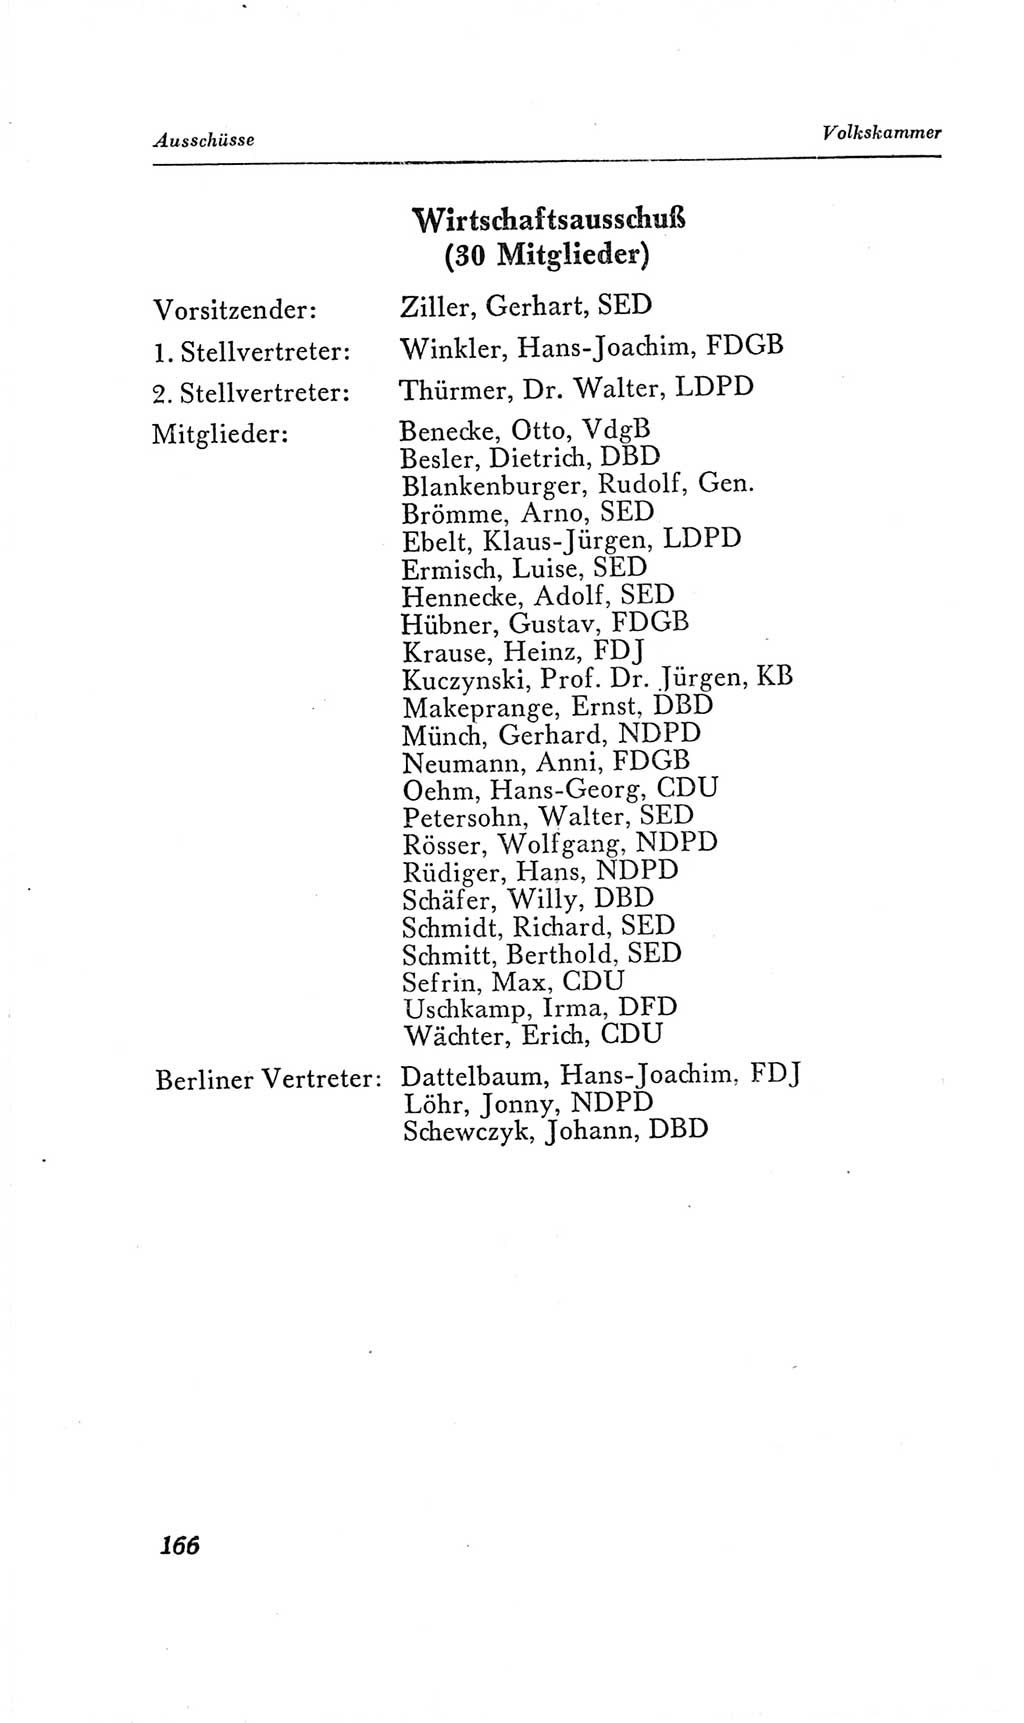 Handbuch der Volkskammer (VK) der Deutschen Demokratischen Republik (DDR), 2. Wahlperiode 1954-1958, Seite 166 (Hdb. VK. DDR, 2. WP. 1954-1958, S. 166)